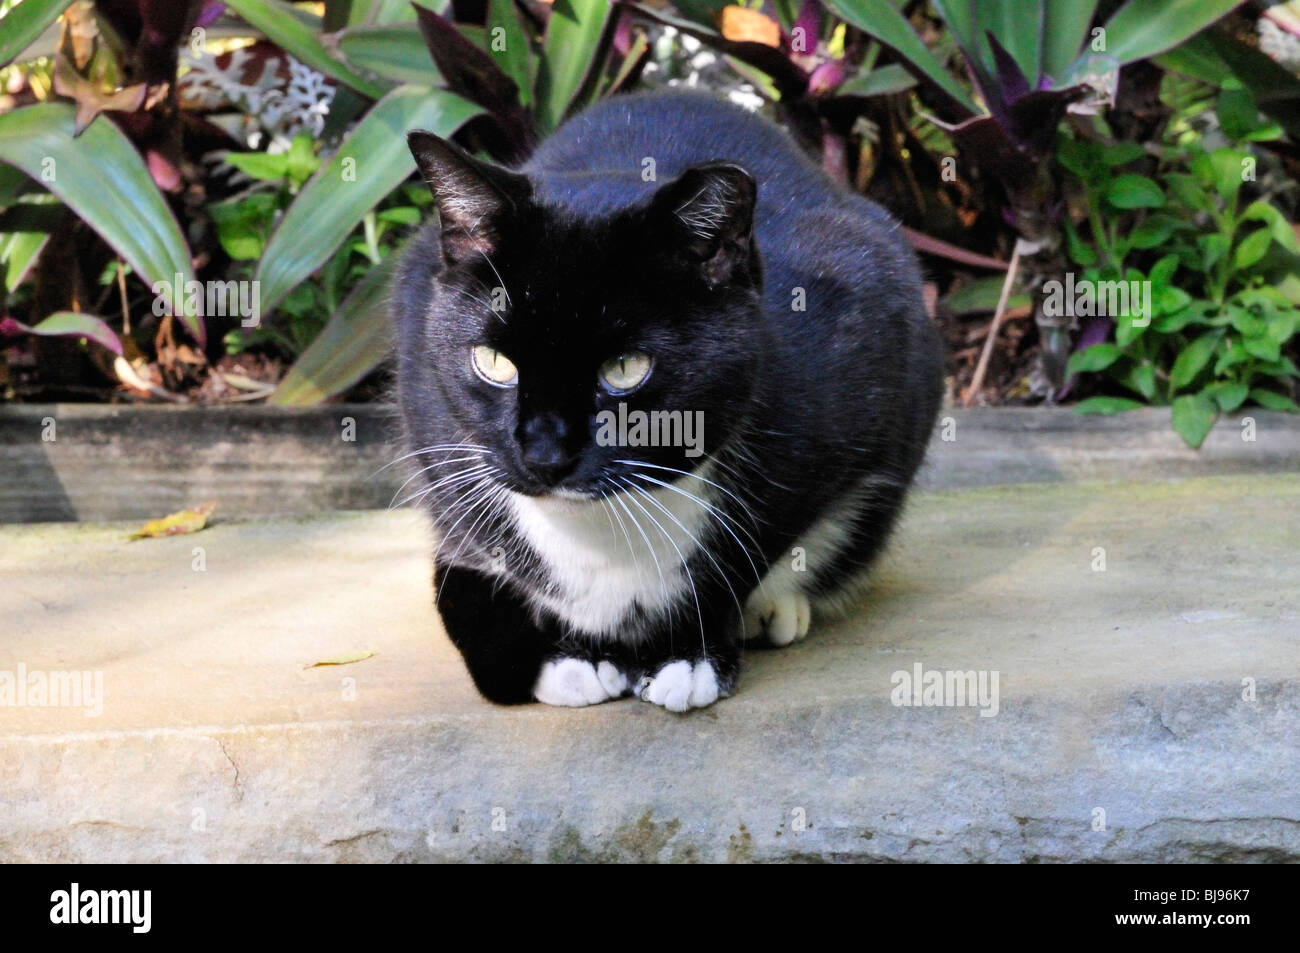 Un noir et blanc (tuxedo) chat avec des pattes avant blanches se détend sur un banc Banque D'Images